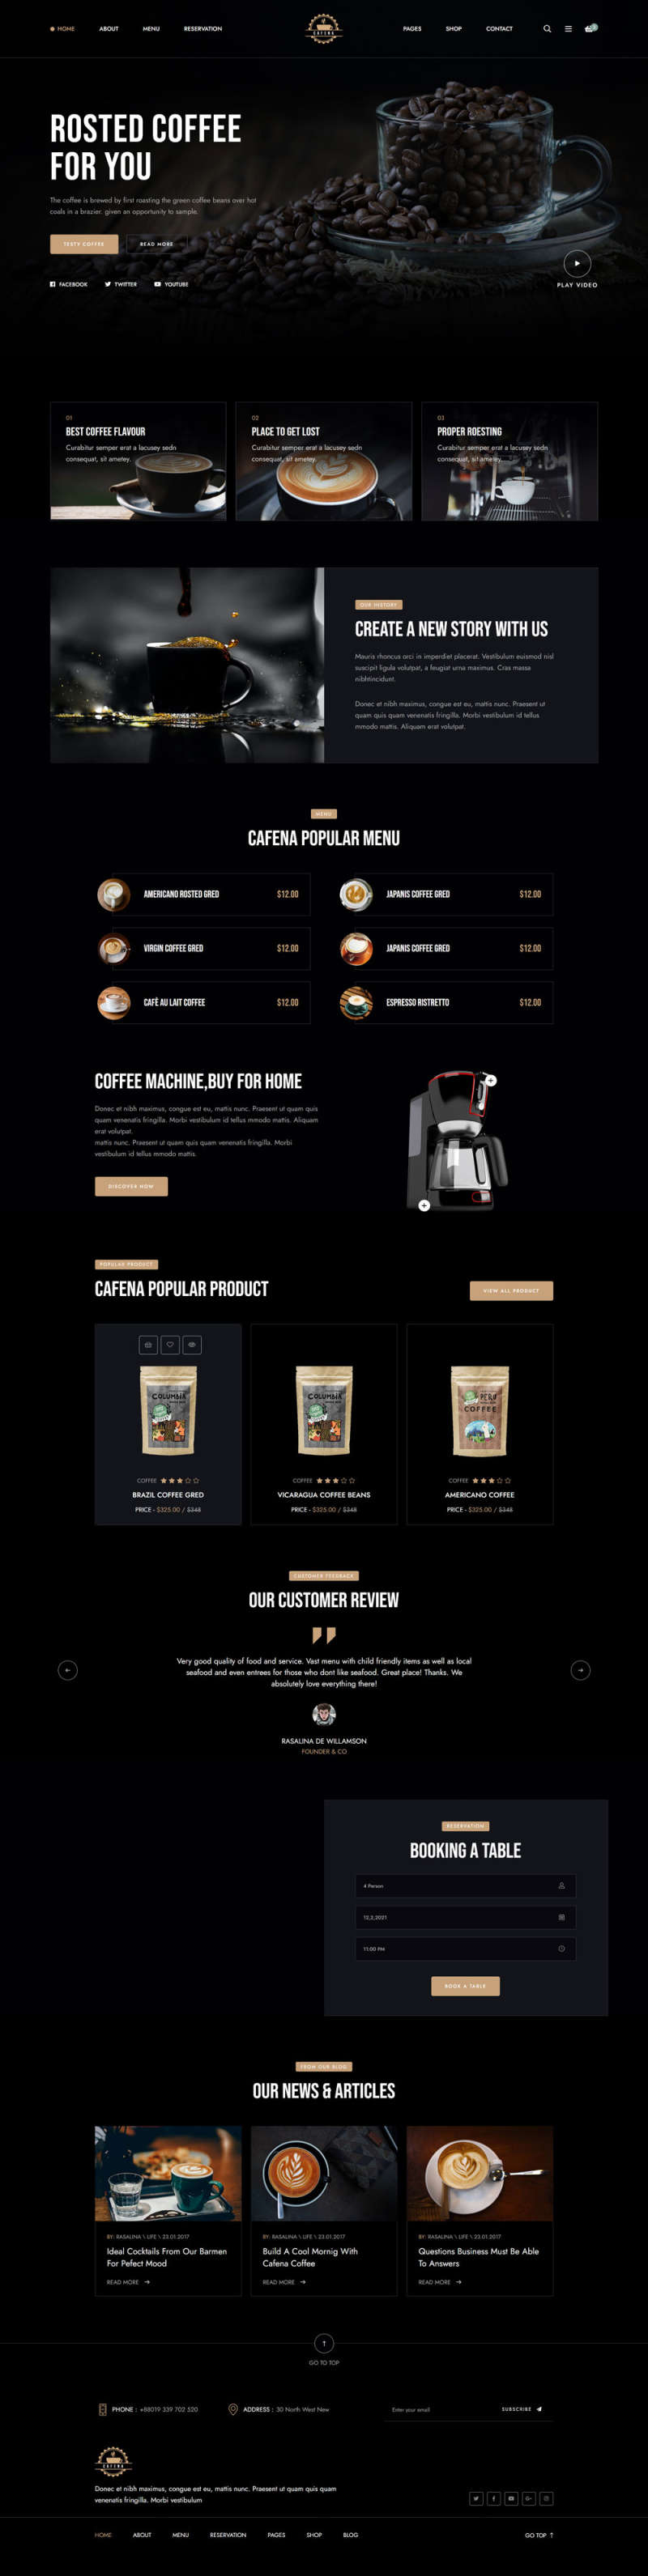 咖啡奶茶店铺HTML5电商模板7714